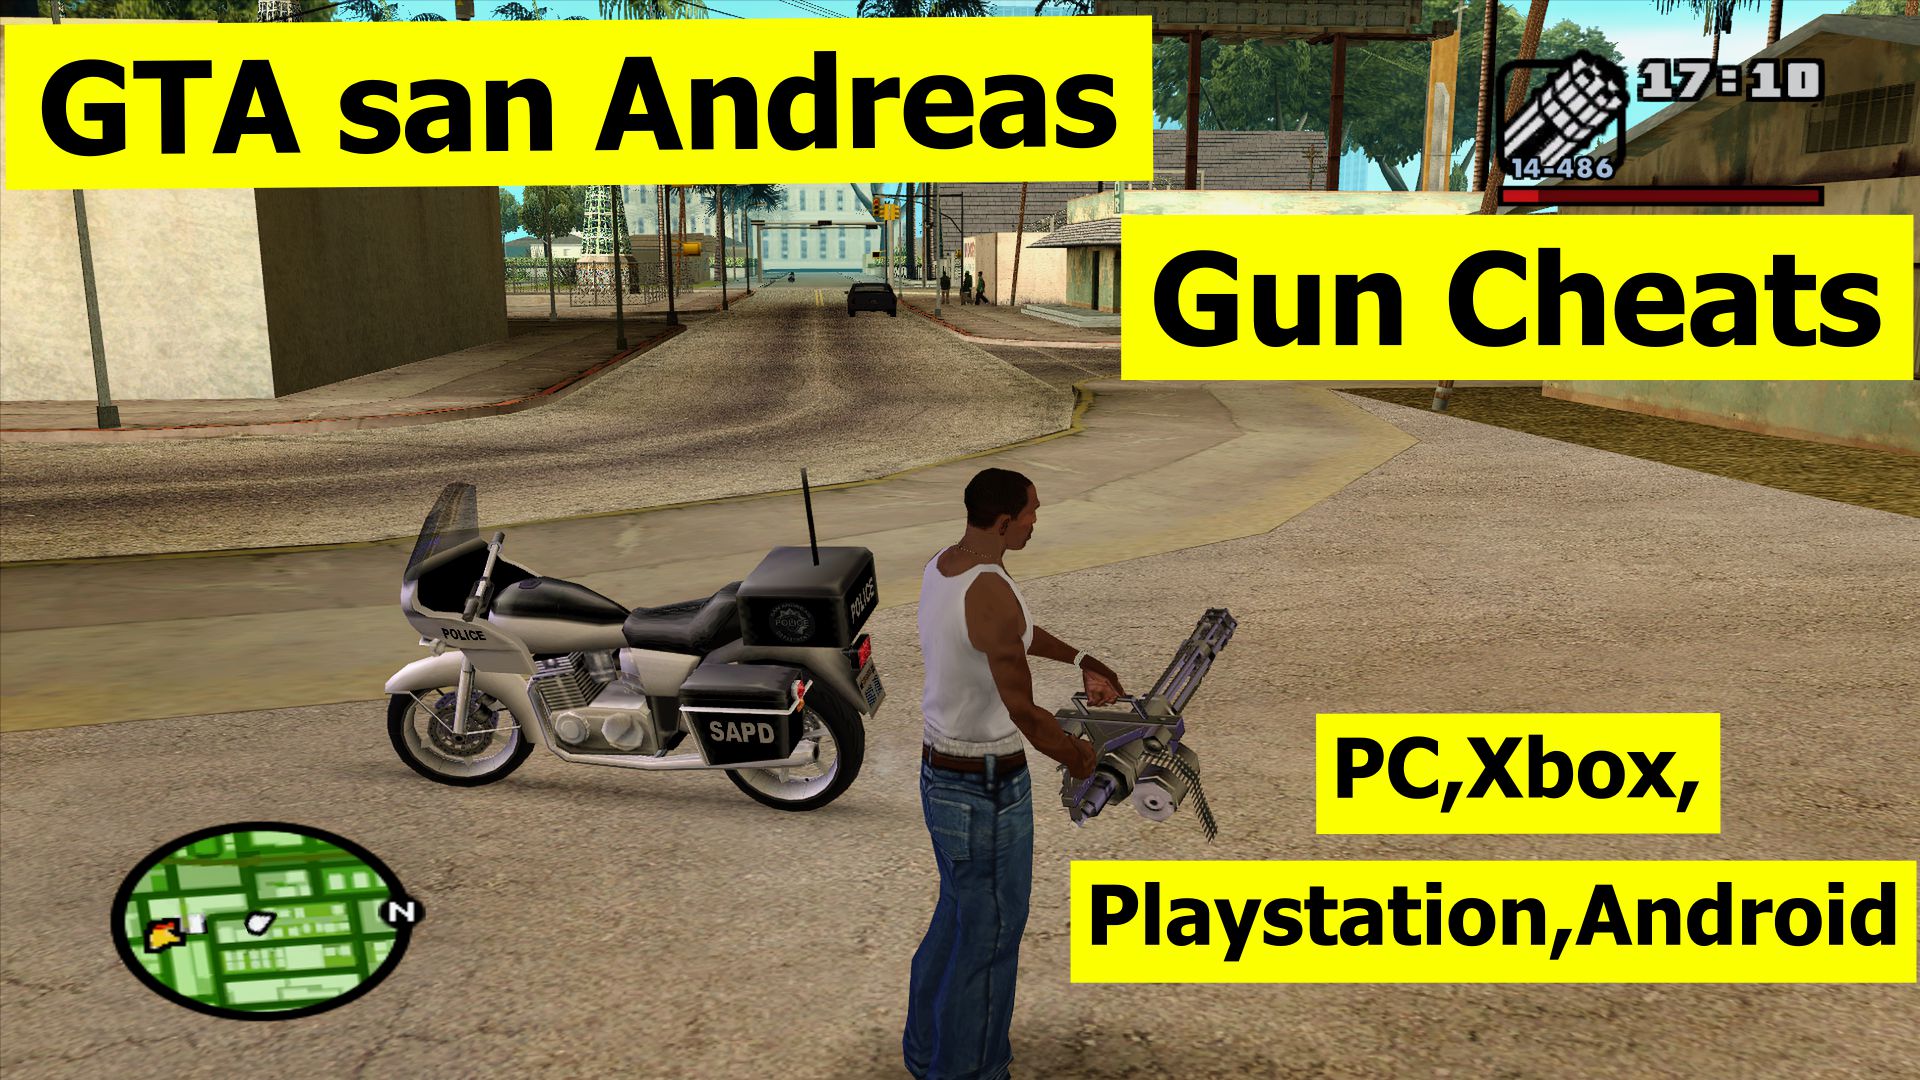 GTA San Andreas gun cheats for PC, Xbox, Playstation, Android